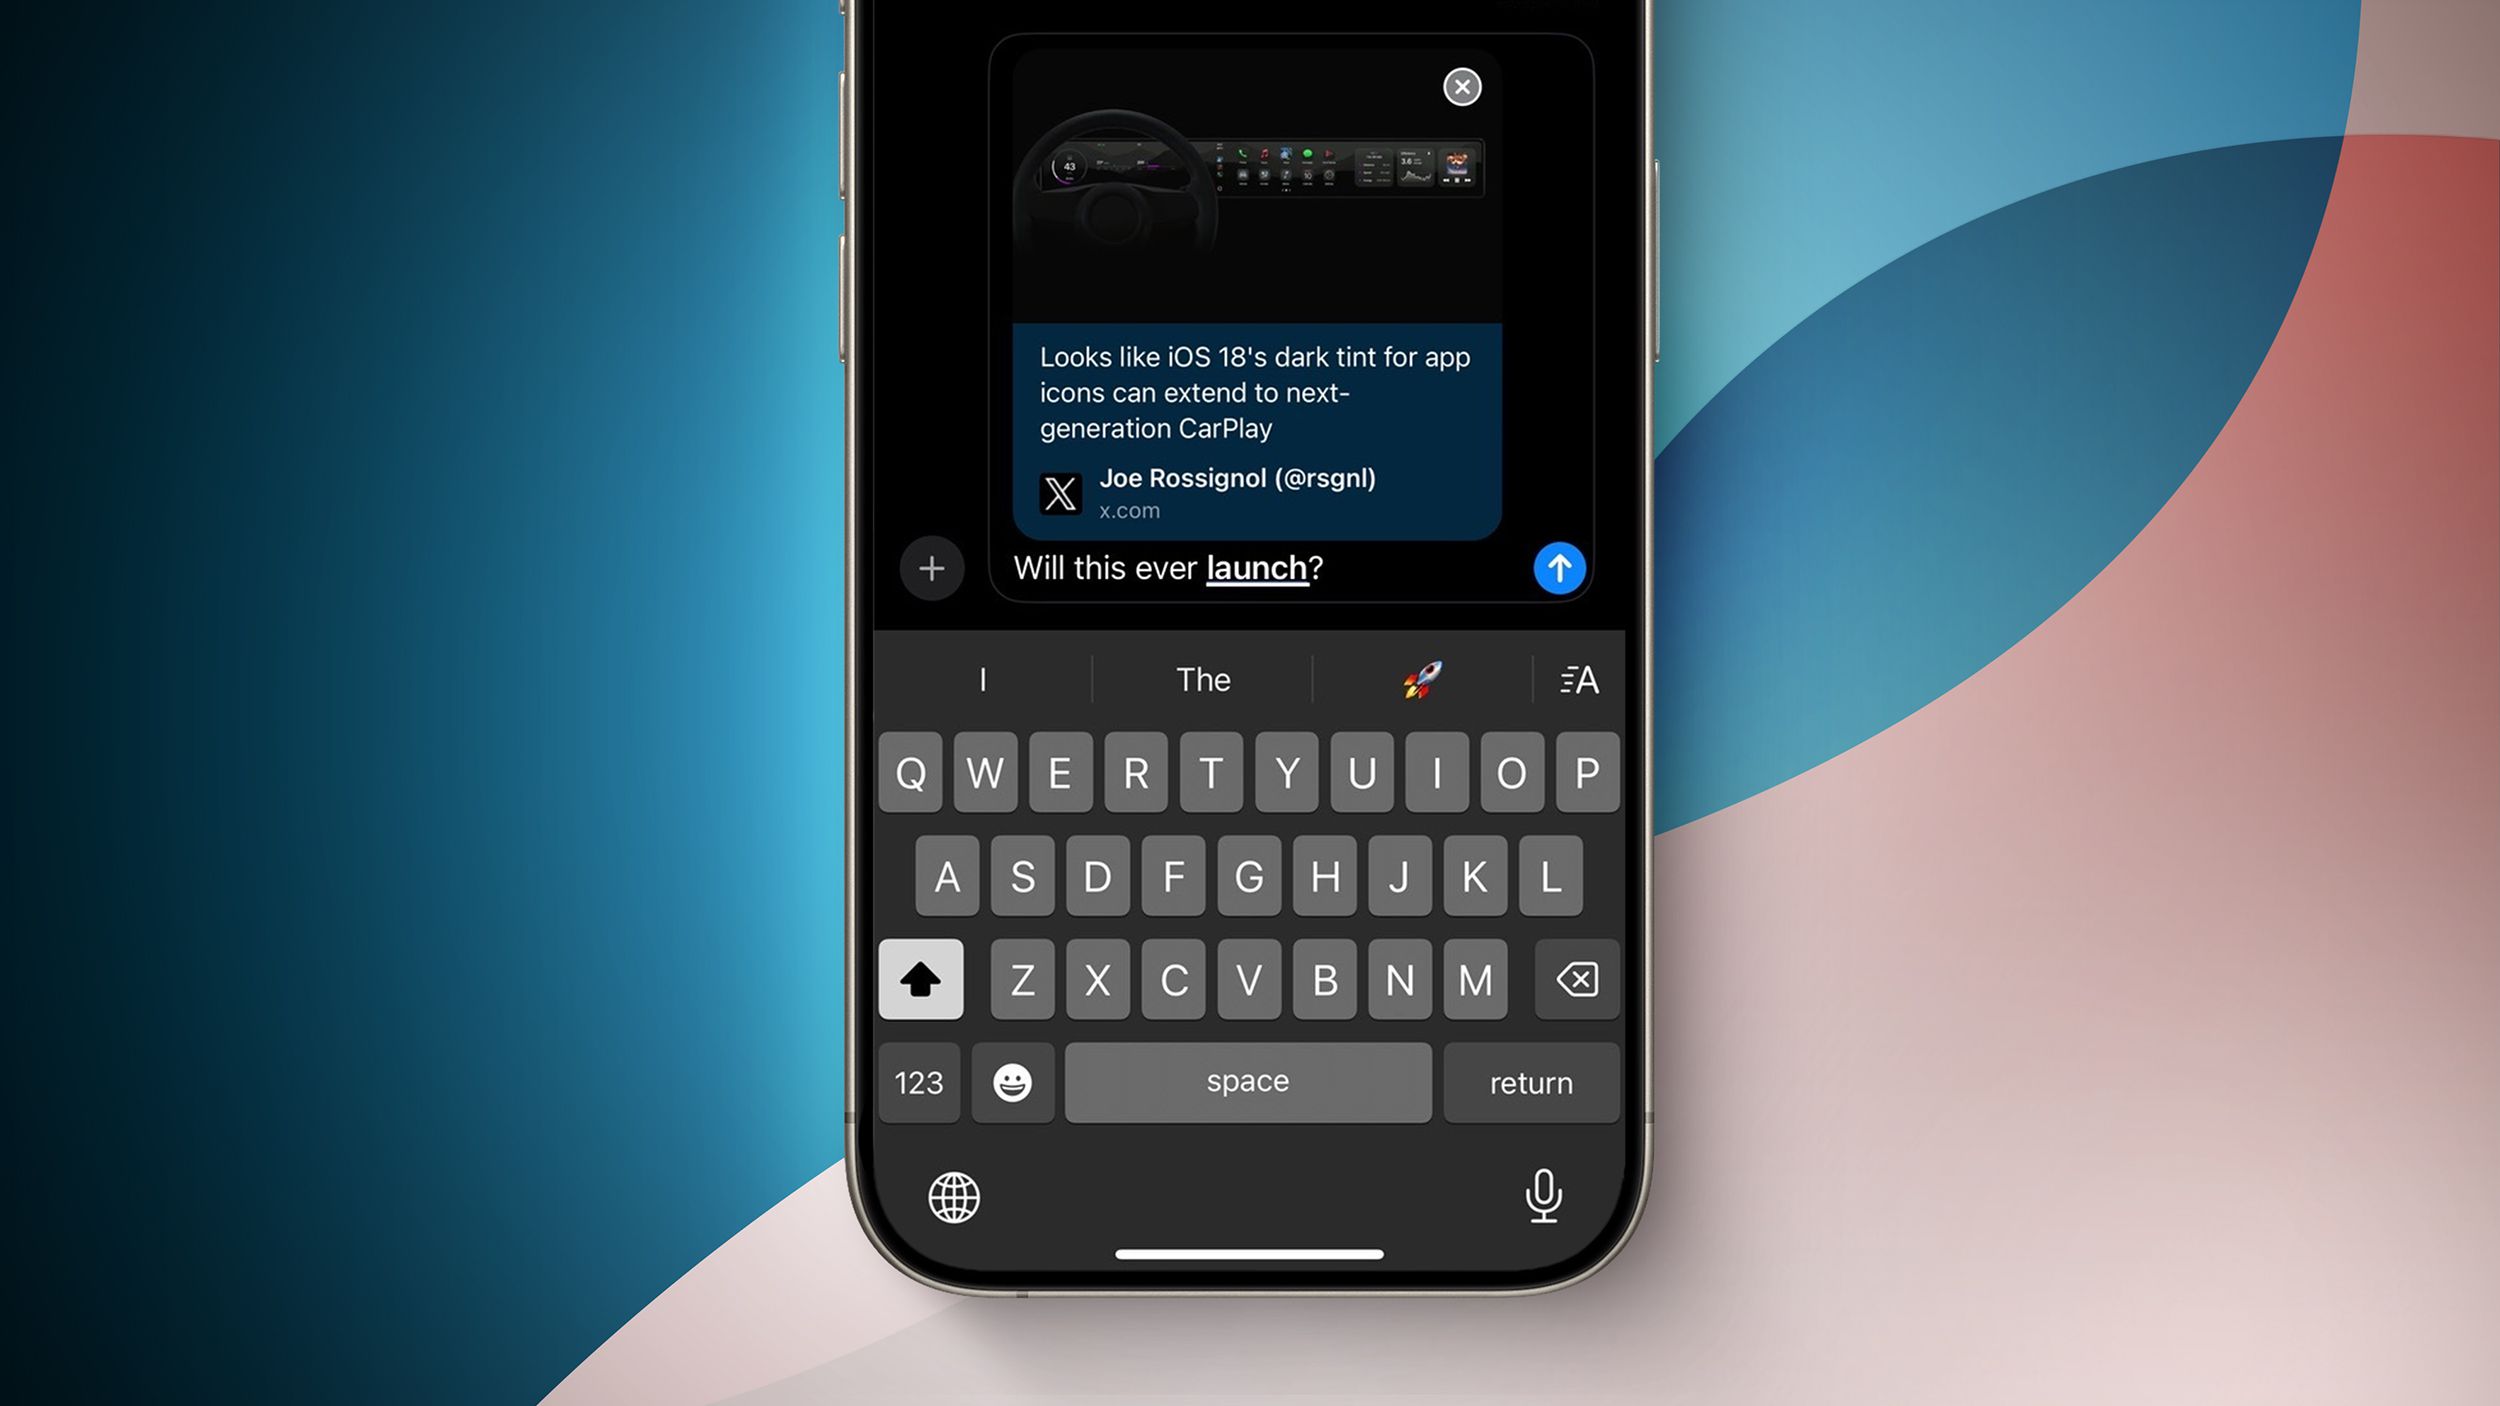 iMessage на iOS 18: карточки ссылок для публикаций в социальных сетях и многое другое